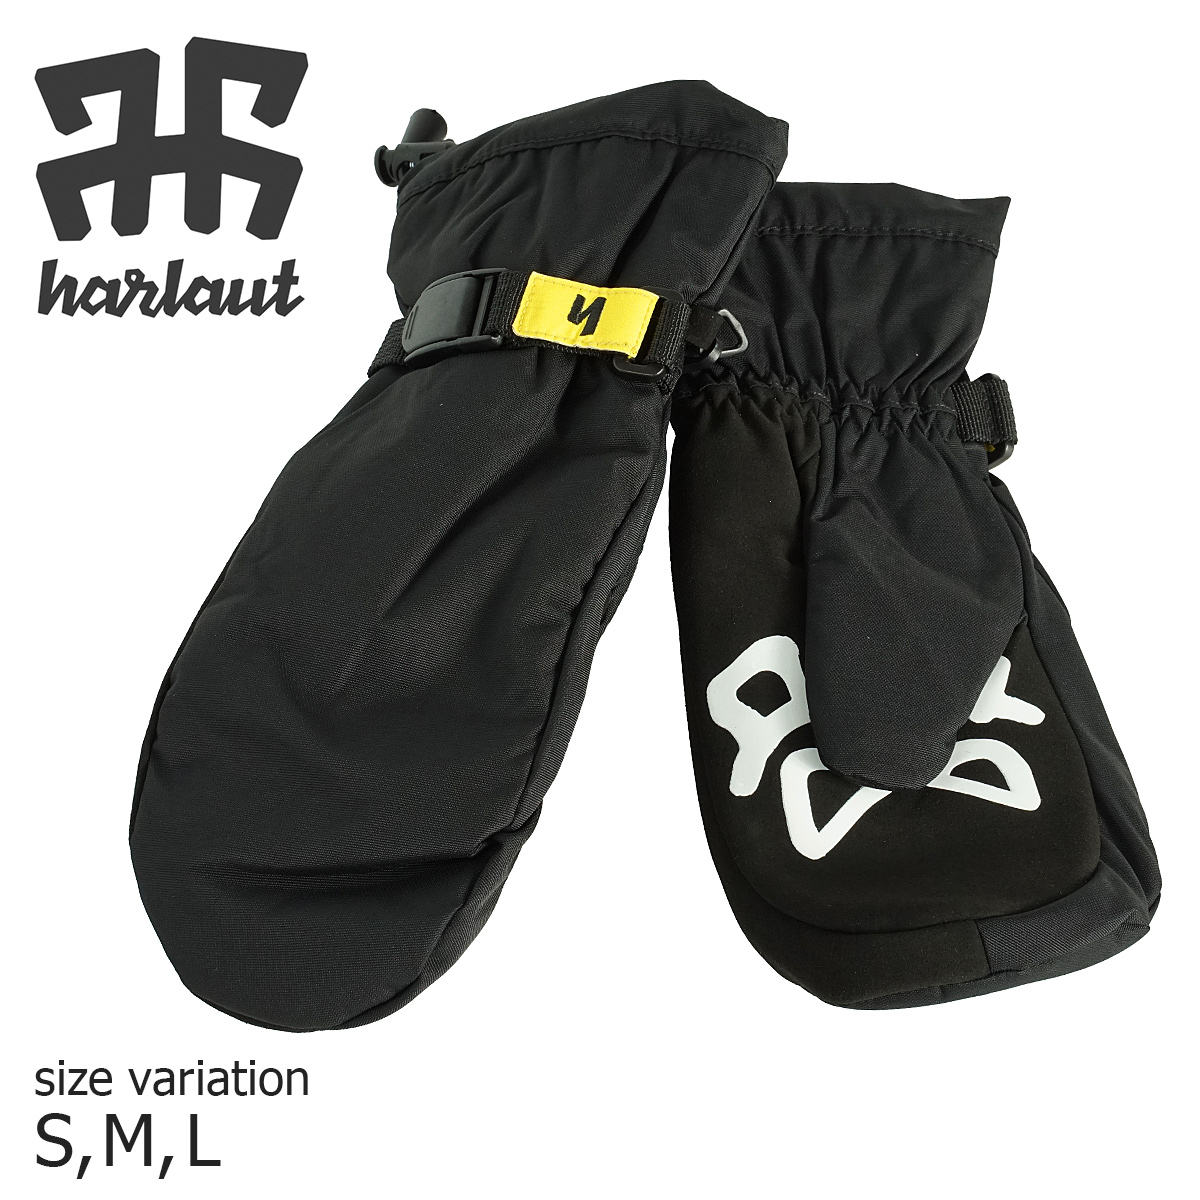 HARLAUT TEAM MITTS BLACK ハーロウ チーム ミット ミトン ヘンリク スノーボード ブローブ SALE 93%OFF 手袋 正規品販売！ スノボー スキー